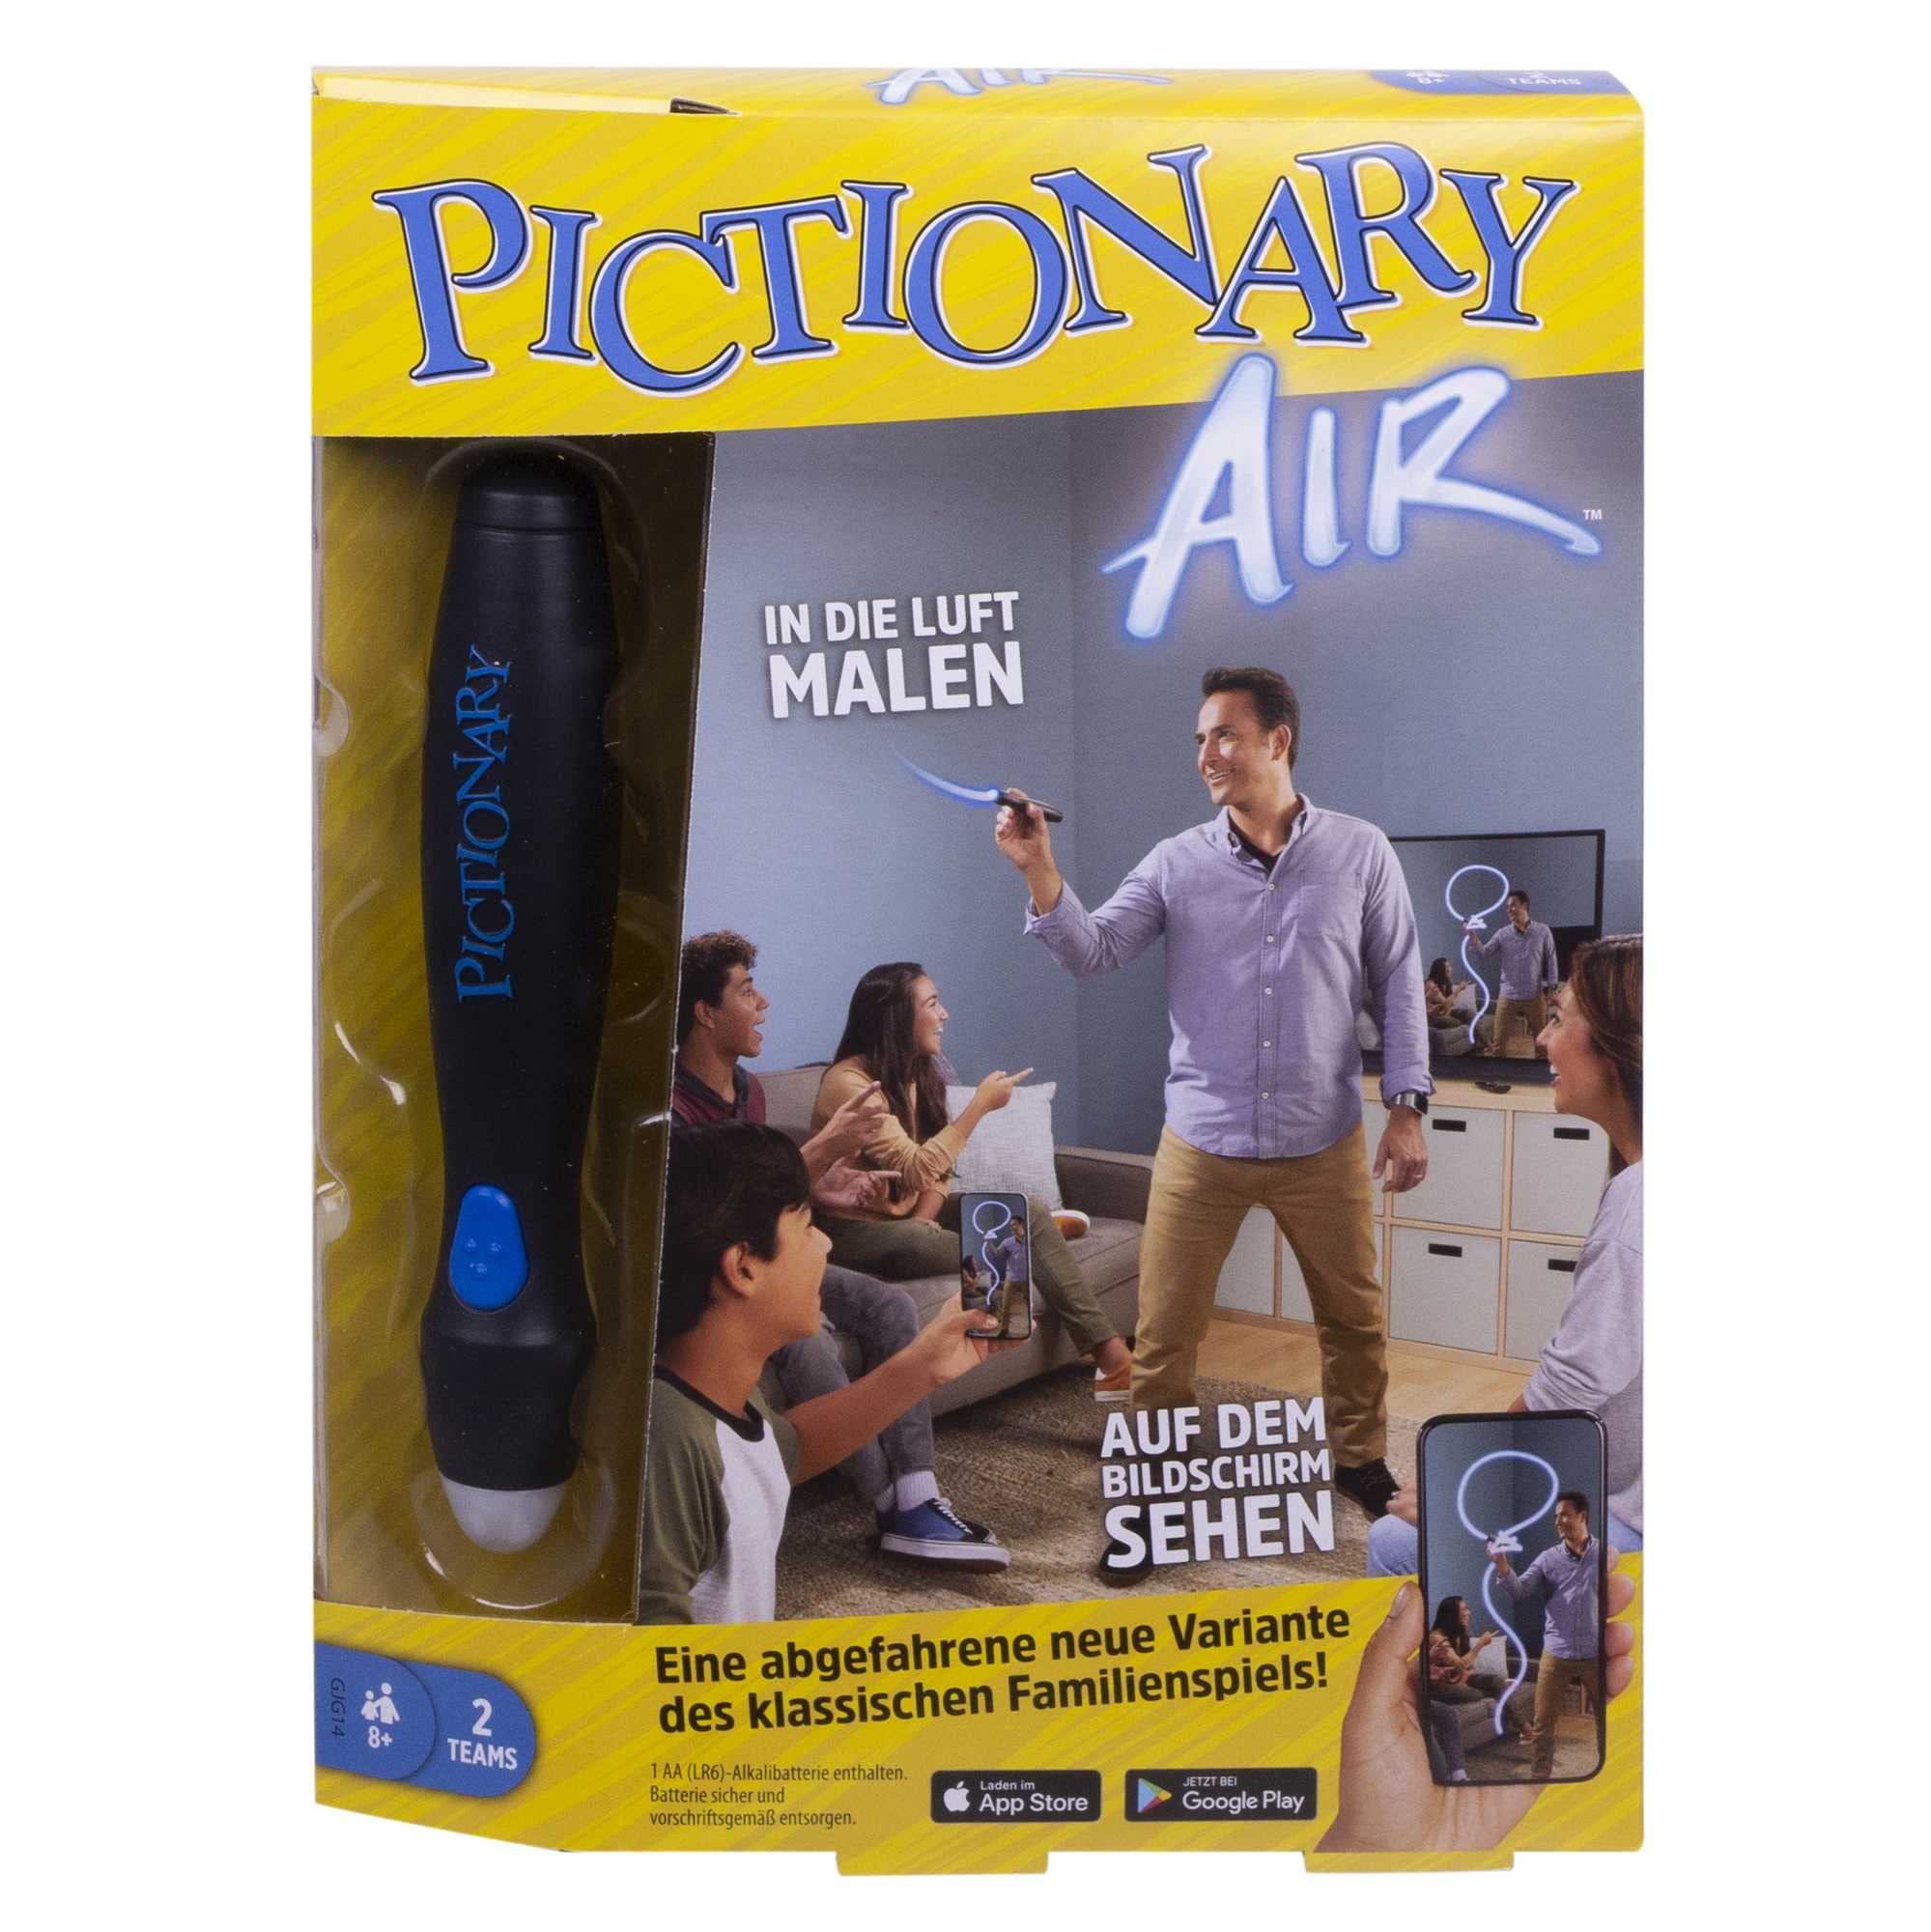 Mattel Games Pictionary Air, In die Luft Malen' Scharade - Zeichenspiel mit Lichtstift und Begriffskarten, Deutsche Version, verbunden mit der kostenlosen App, Gesellschaftsspiel, ab 8 Jahren, GJG14